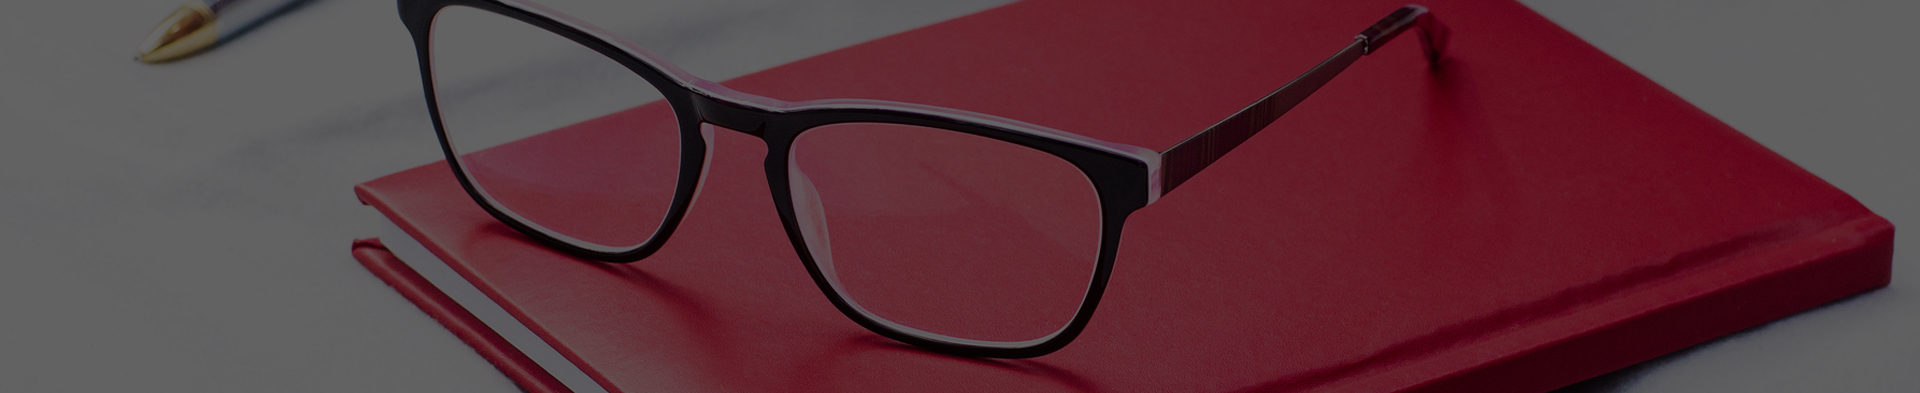 Povrchové úpravy brýlových čoček a jaké jsou jejich výhody